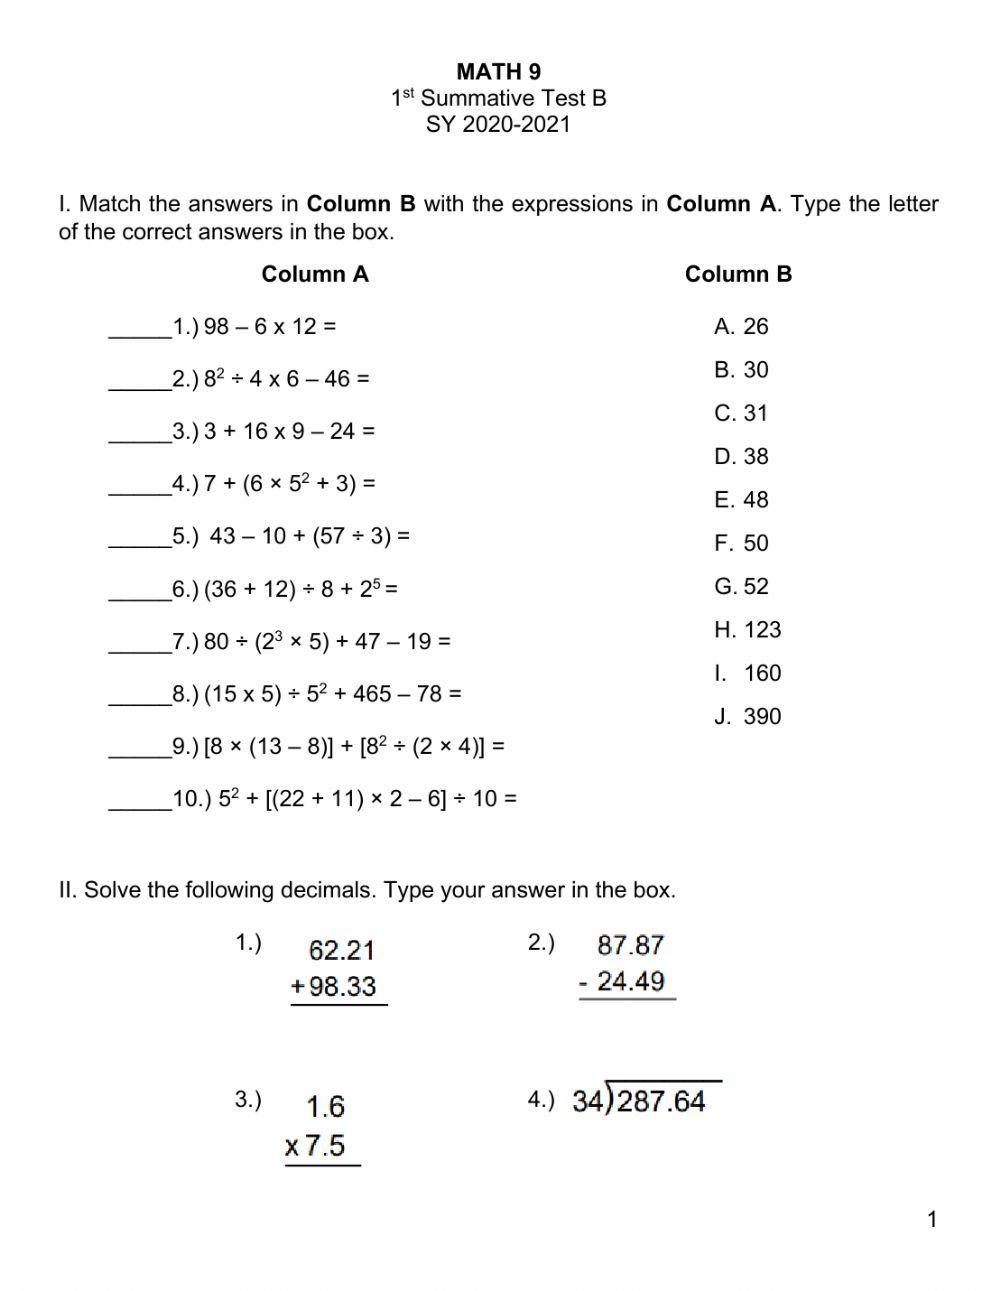 Math 9 1st Qtr Summative Test B